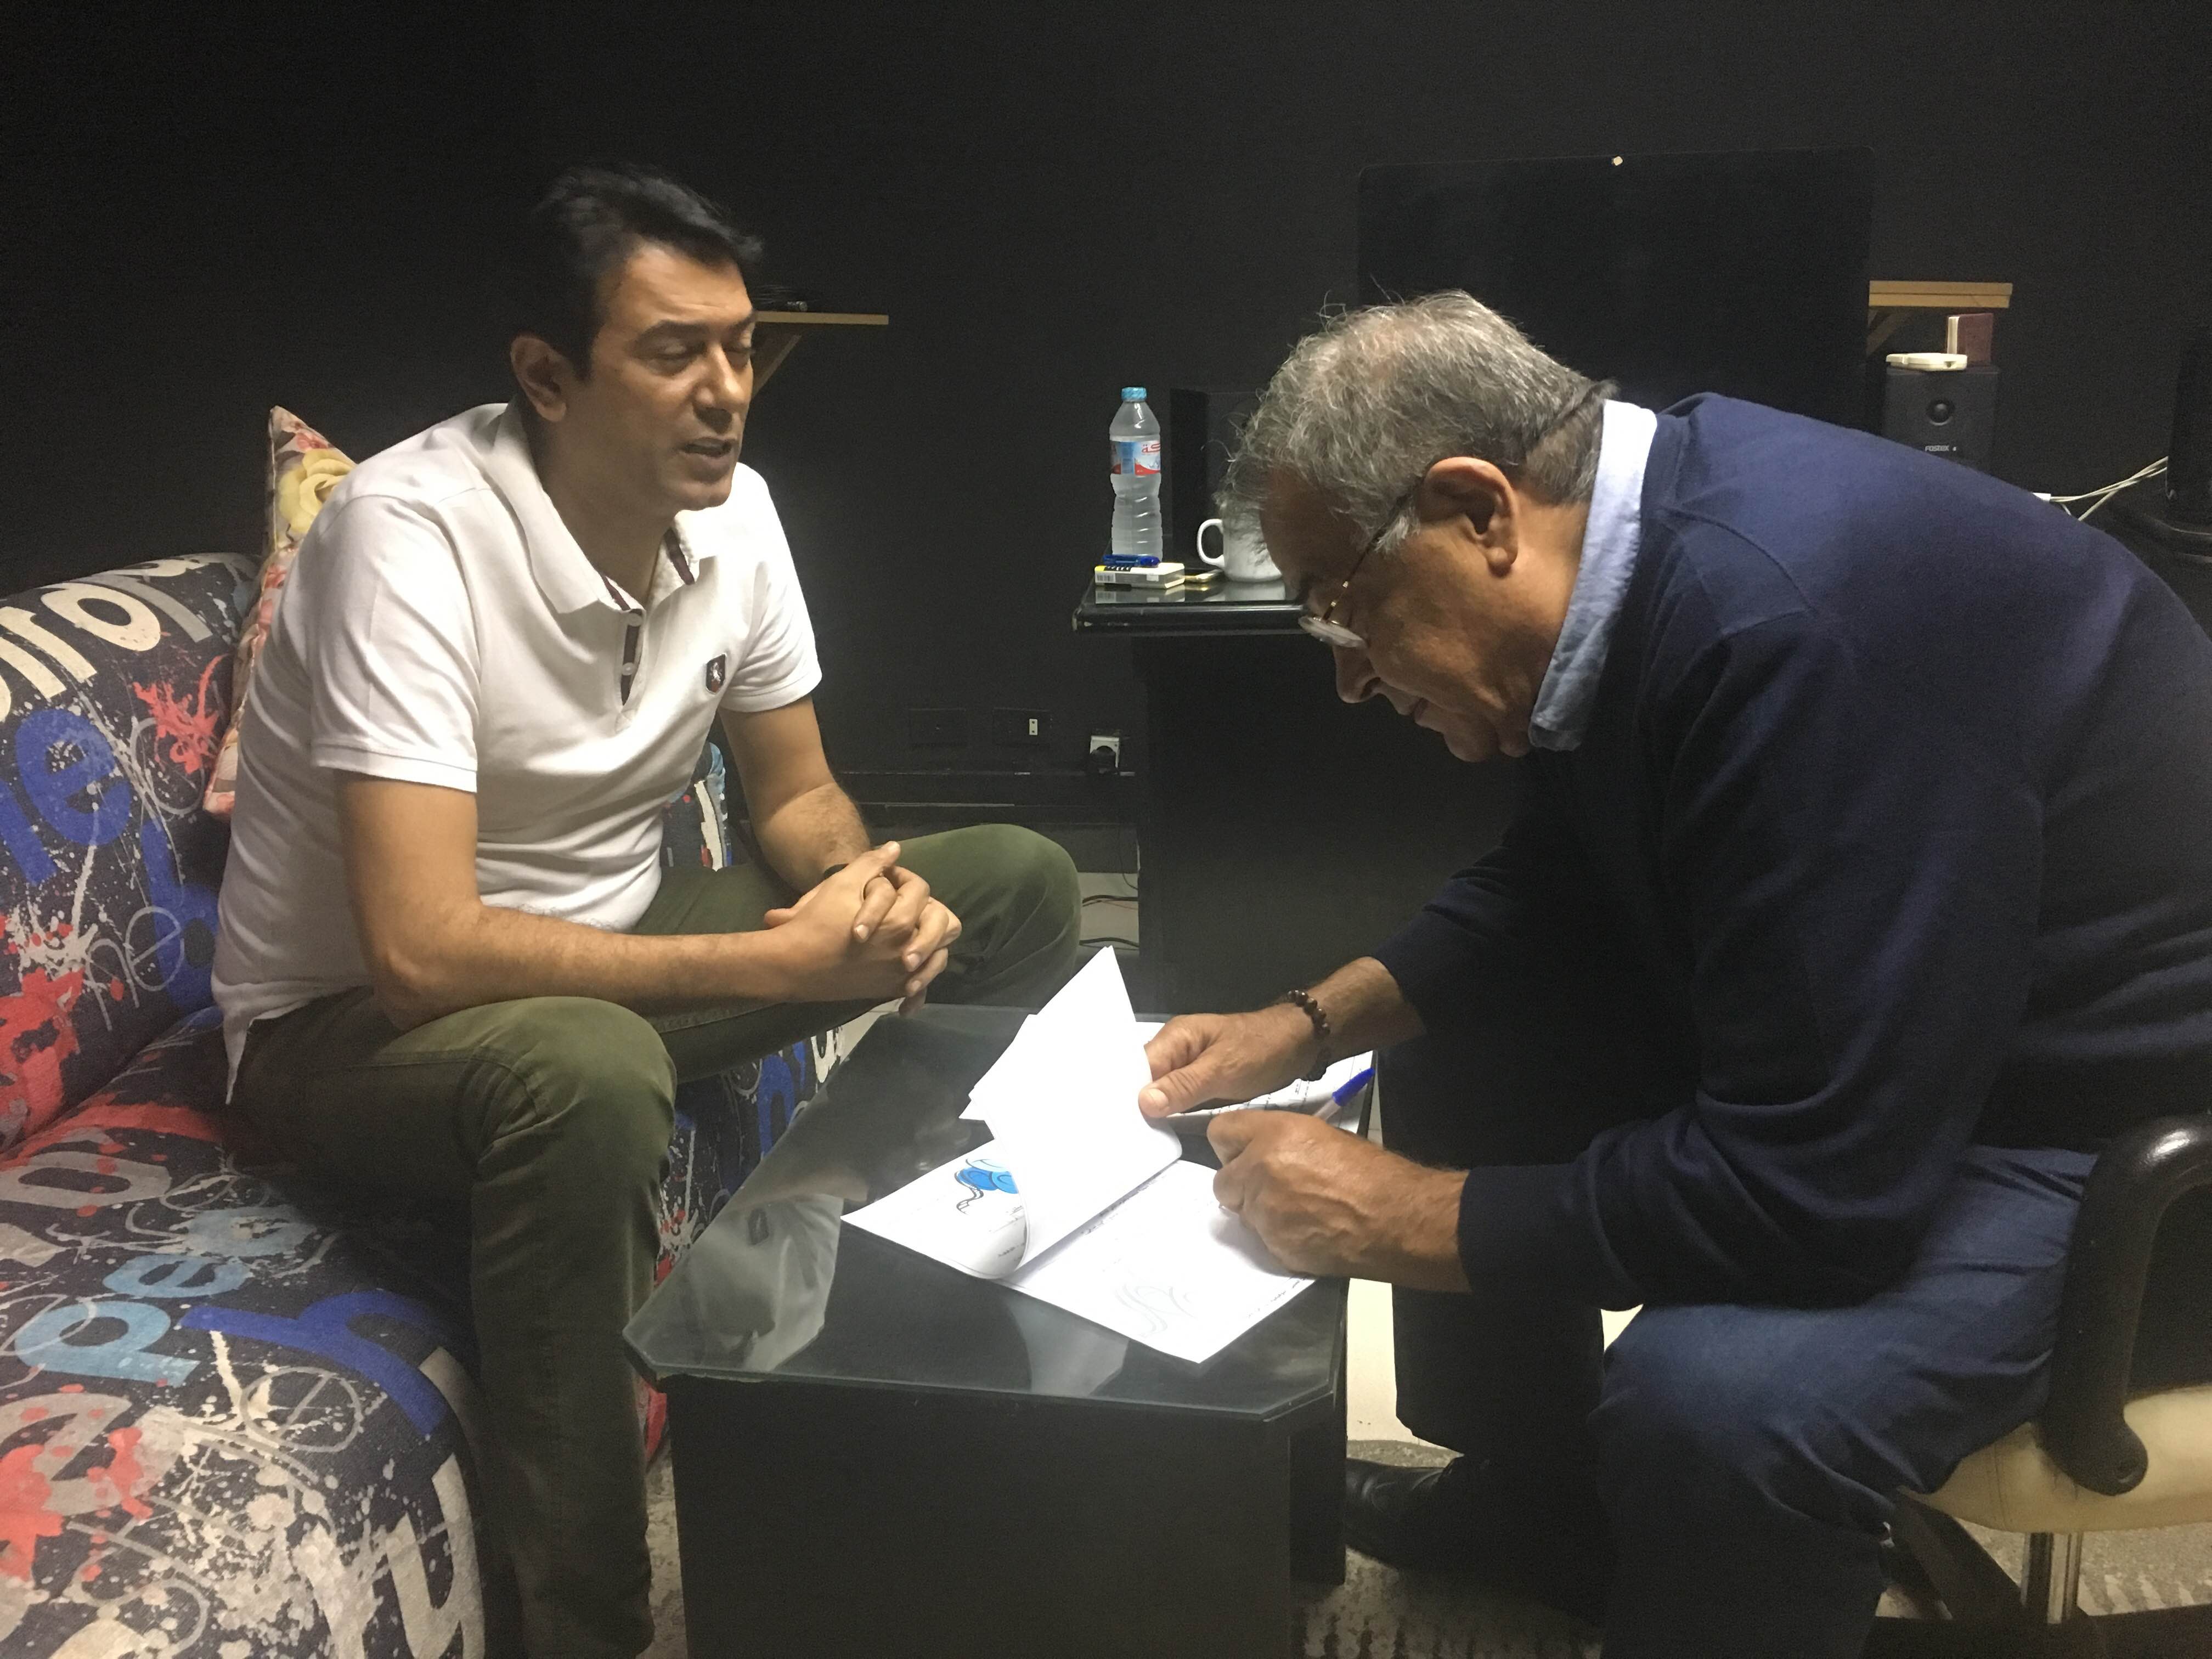 أحمد وفيق والمنتج حسين القلا أثناء التعاقد على صندوق الدنيا (1)